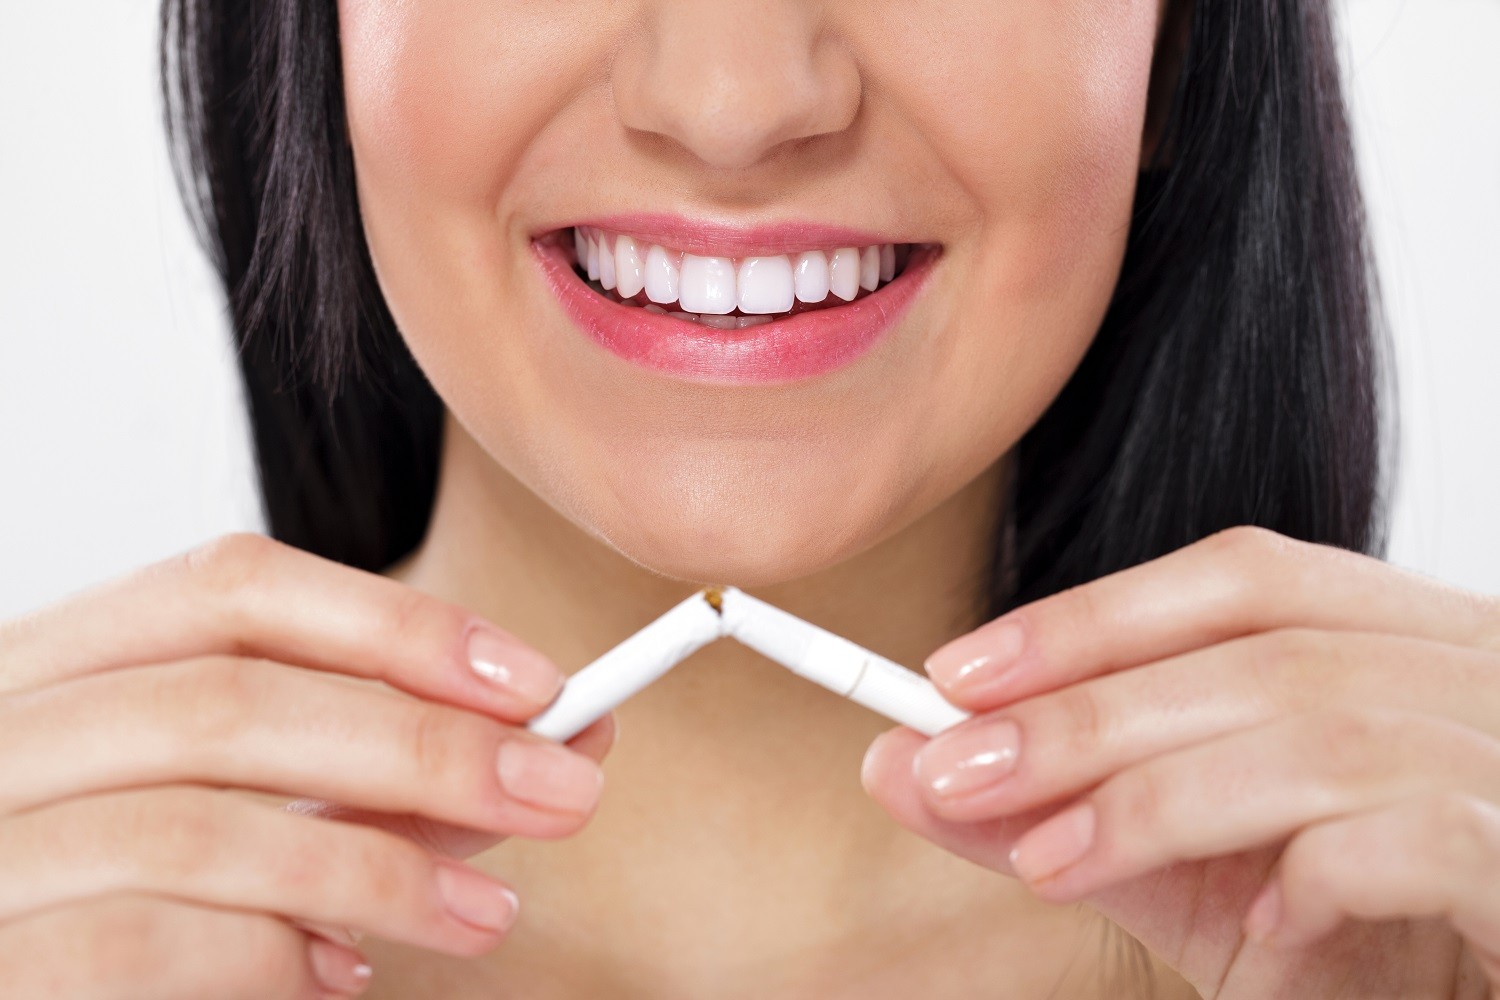 Connaissez-vous l’impact du tabac sur votre santé bucco-dentaire ? 